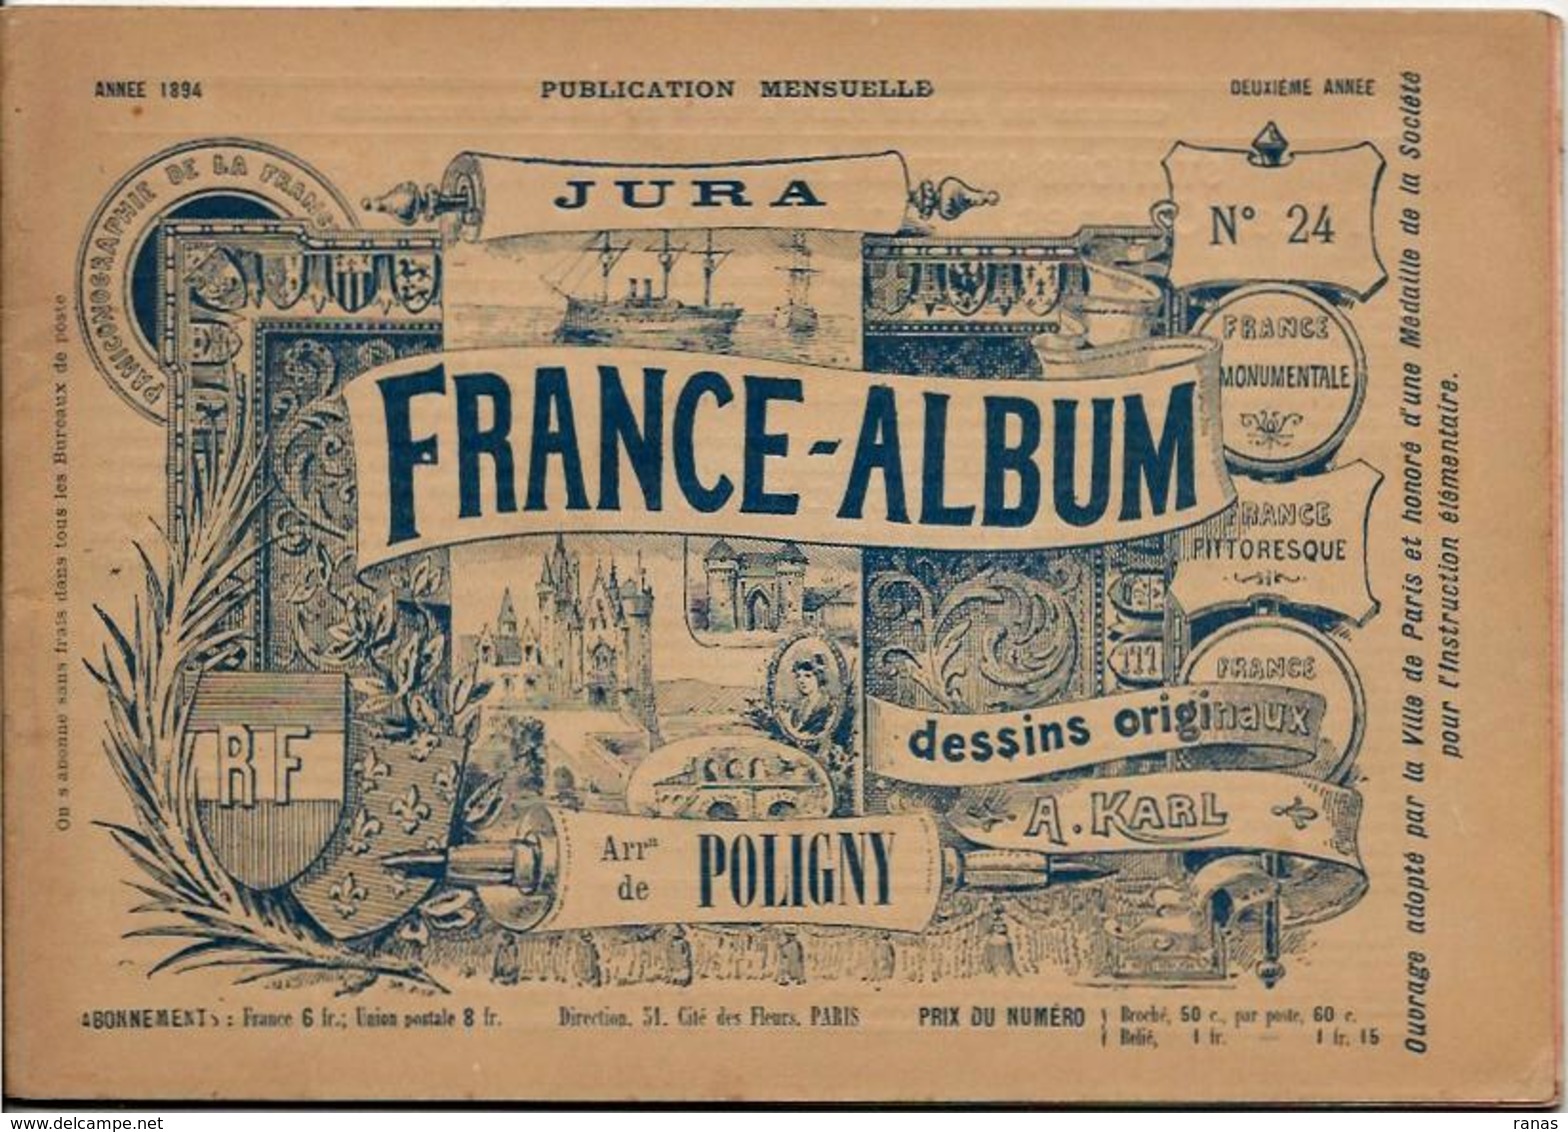 JURA 39 France Album De A. KARL, Carte Gravures Texte Publicités 1894 - Reiseprospekte